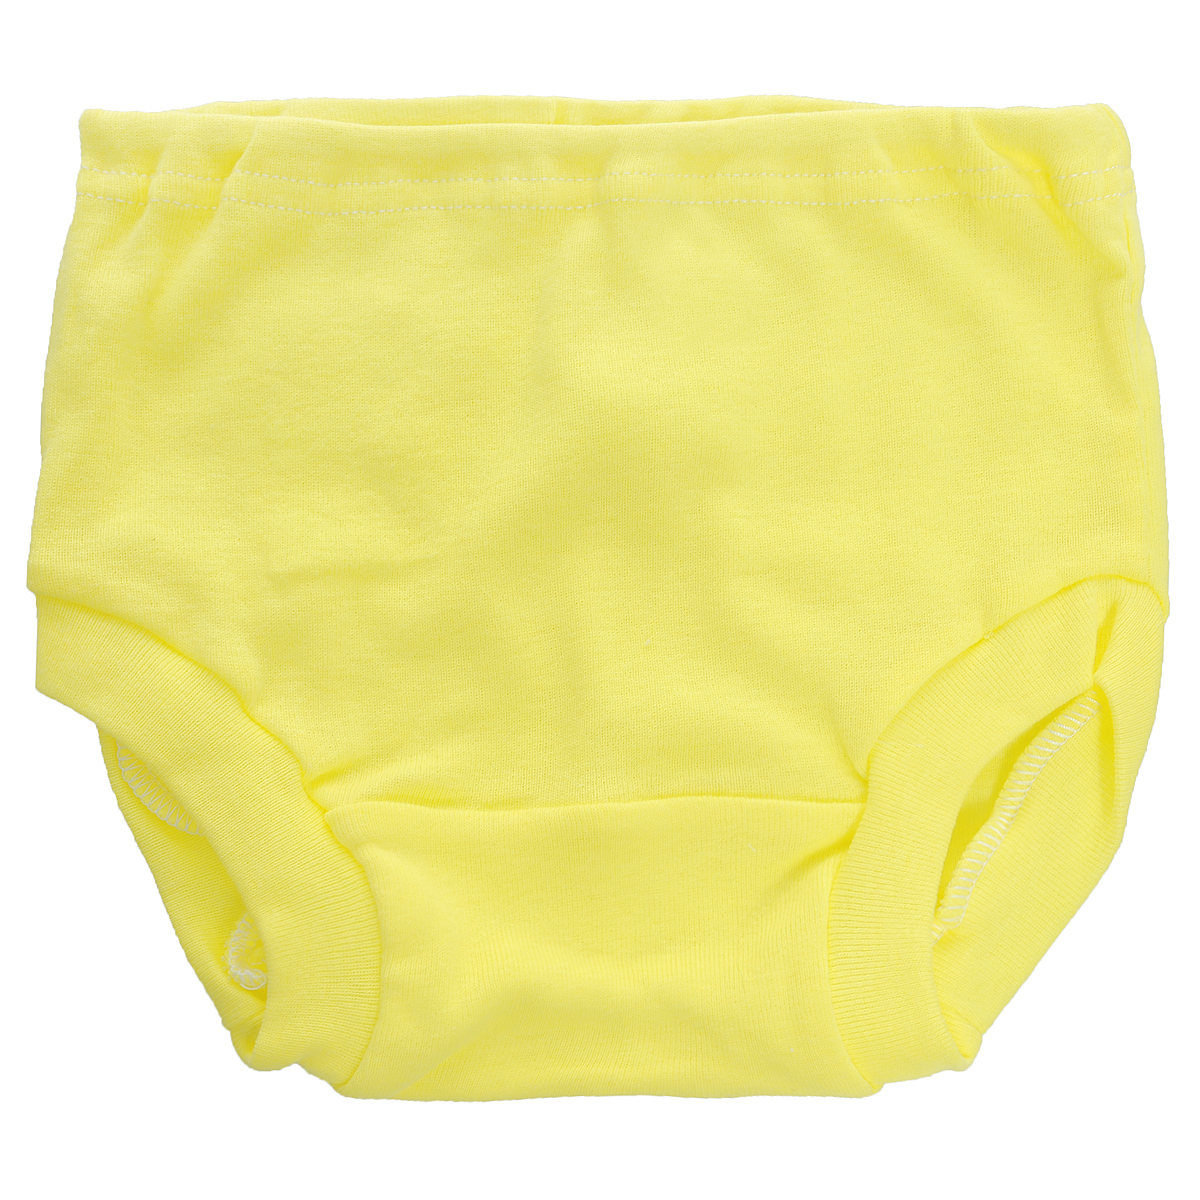 Трусы детские Трон-плюс, цвет: желтый. 8220. Размер 74, 9 месяцев